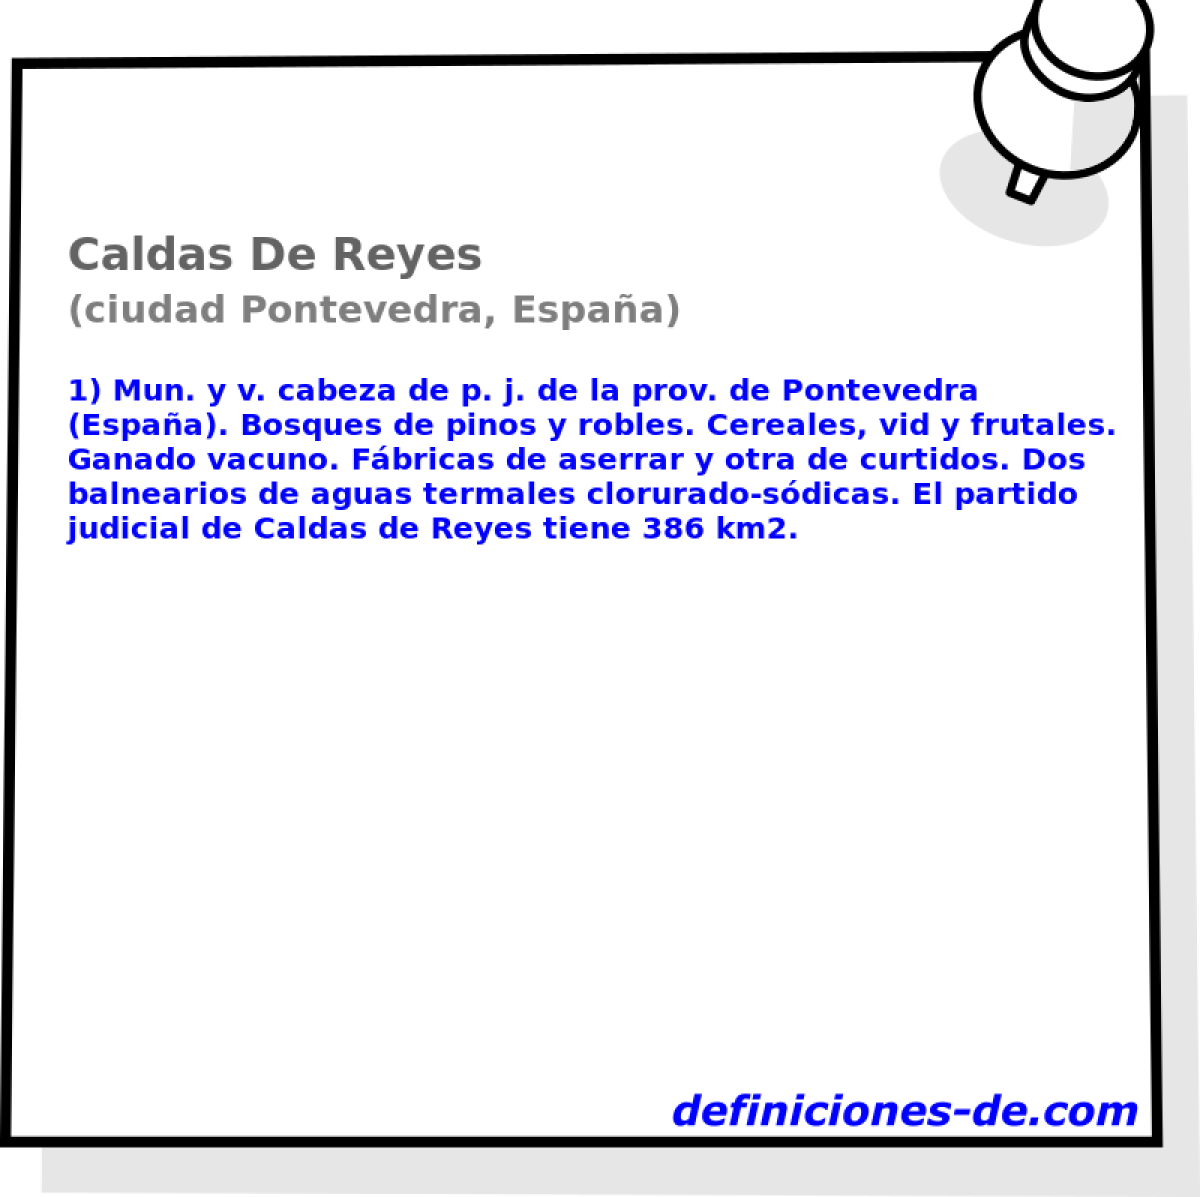 Caldas De Reyes (ciudad Pontevedra, Espaa)